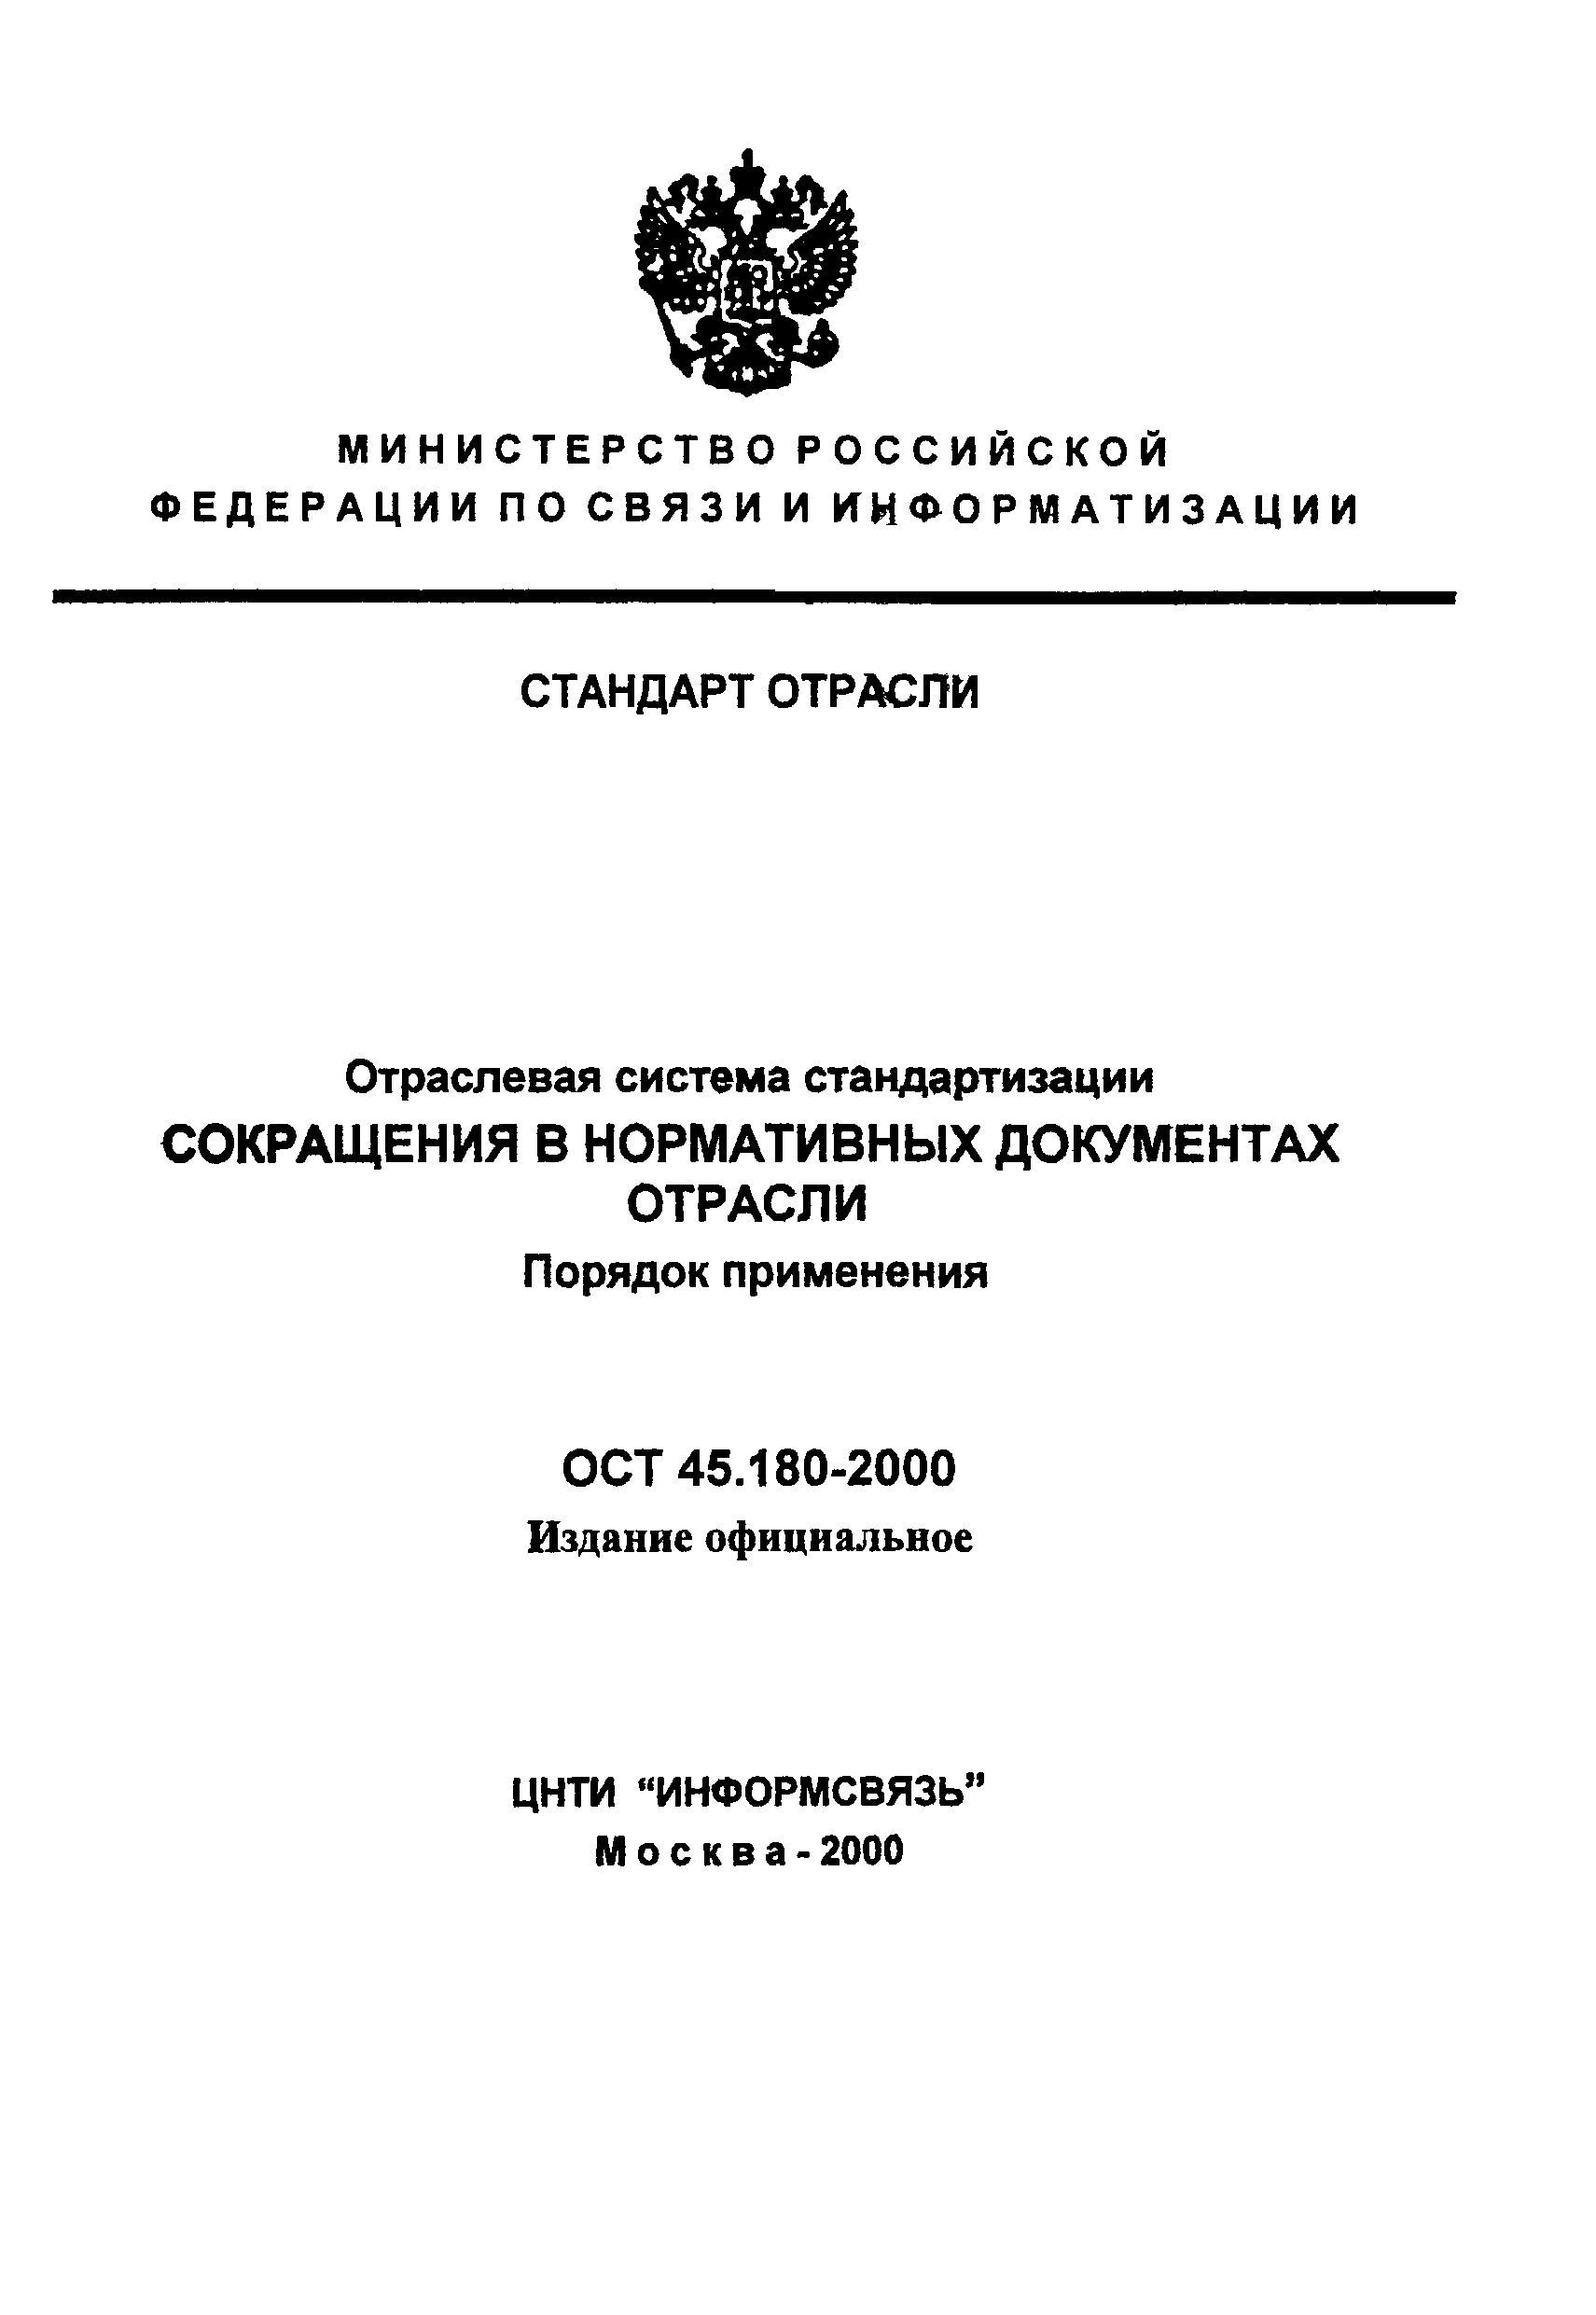 ОСТ 45.180-2000